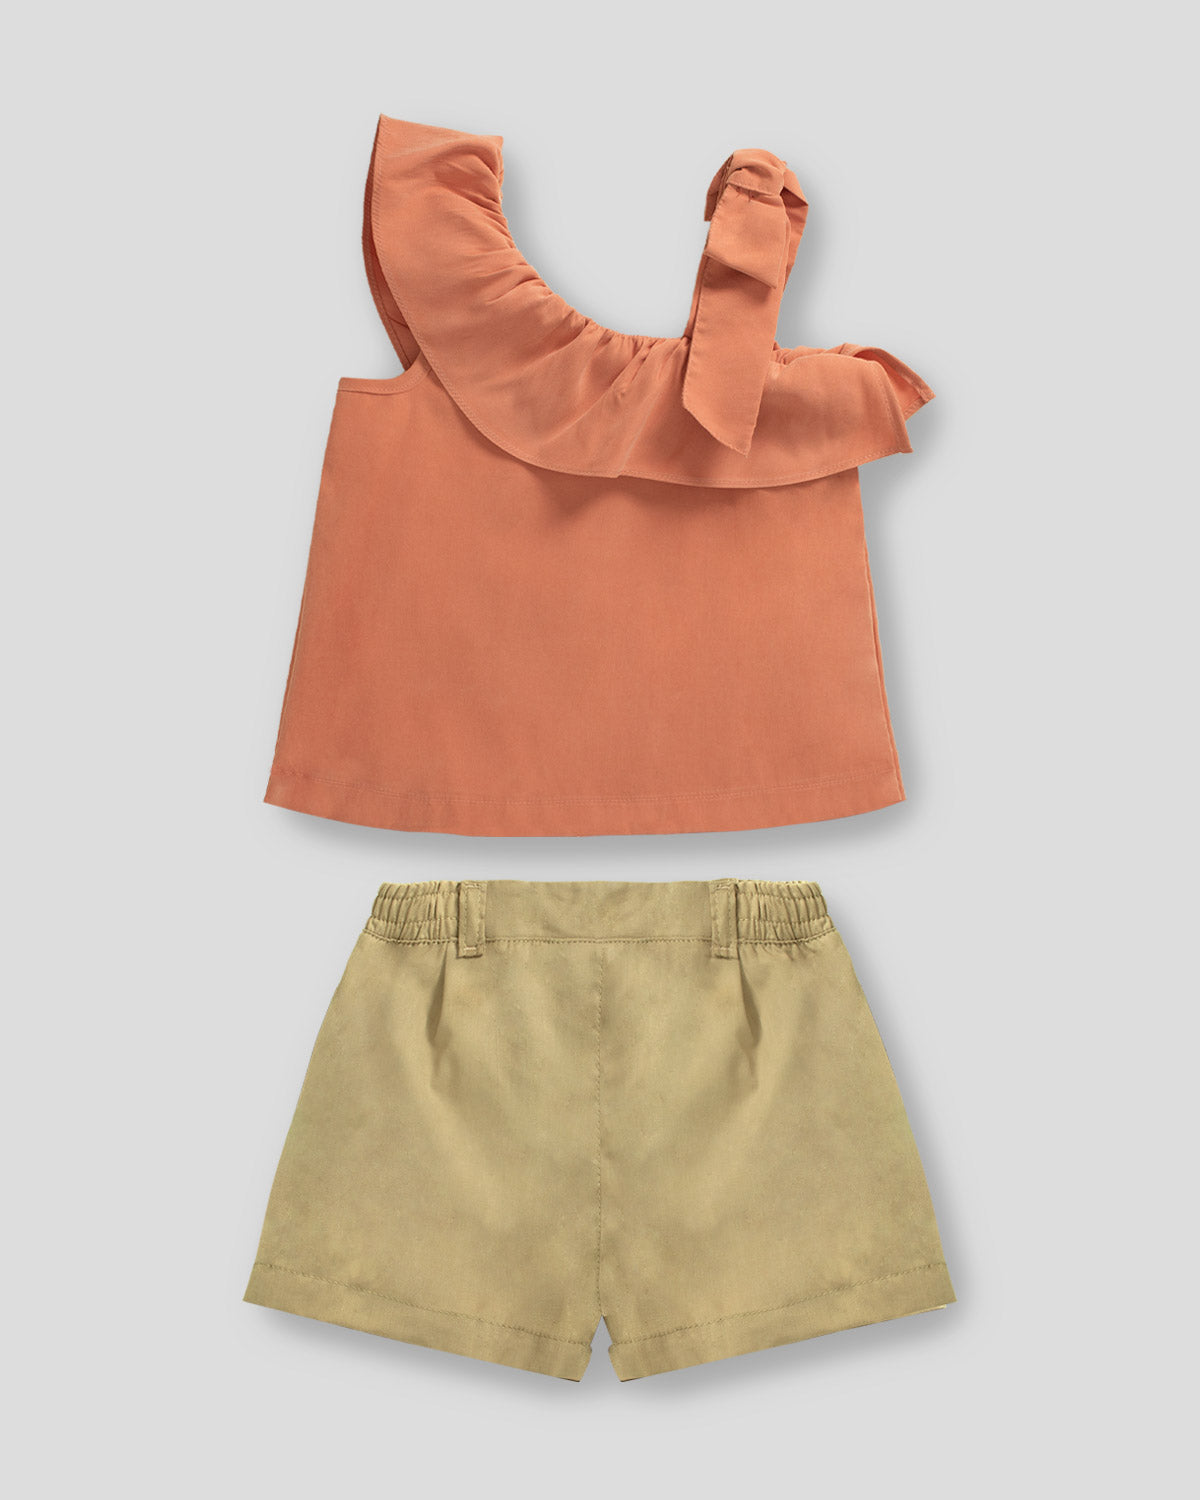 Conjunto blusa terracota con bolero cruzado y short café para niña